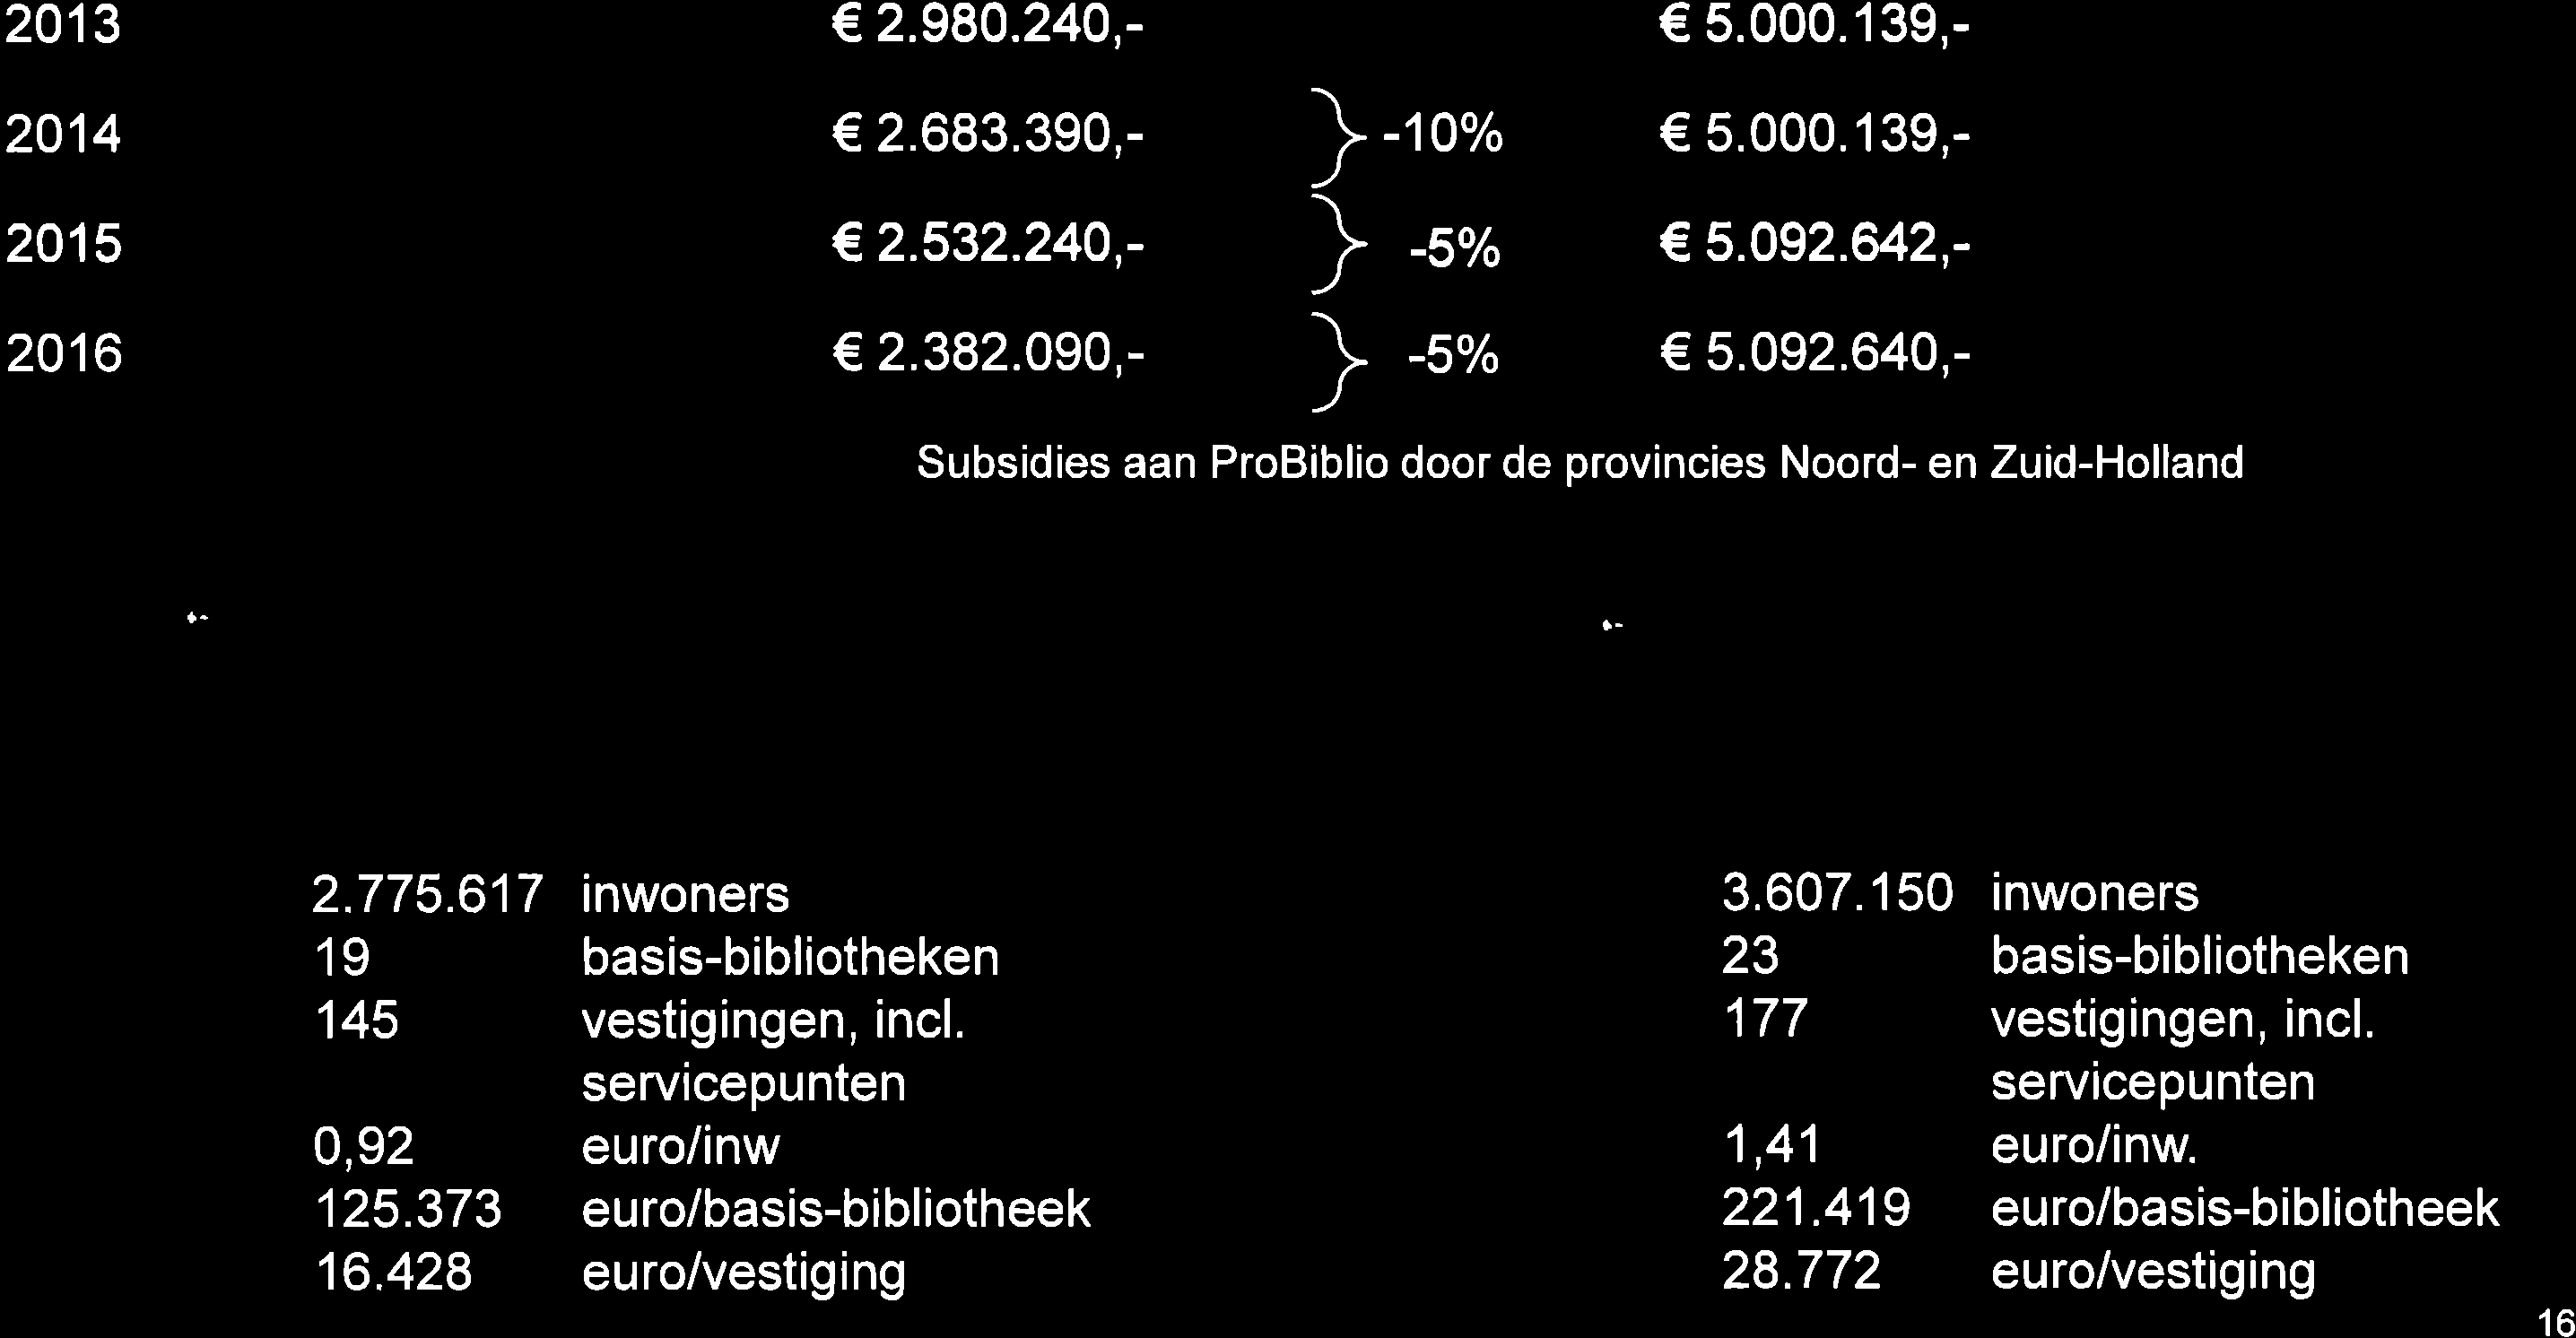 il2,- 5.092.640,- Subsidies n ProBiblio door de provincies Noord- en Zuid-Hollnd ô- F \:i rl'' r S- :ìe:" *ij':. :l,-,r,,,r'r, r :i, i1rìurjp 2.775.